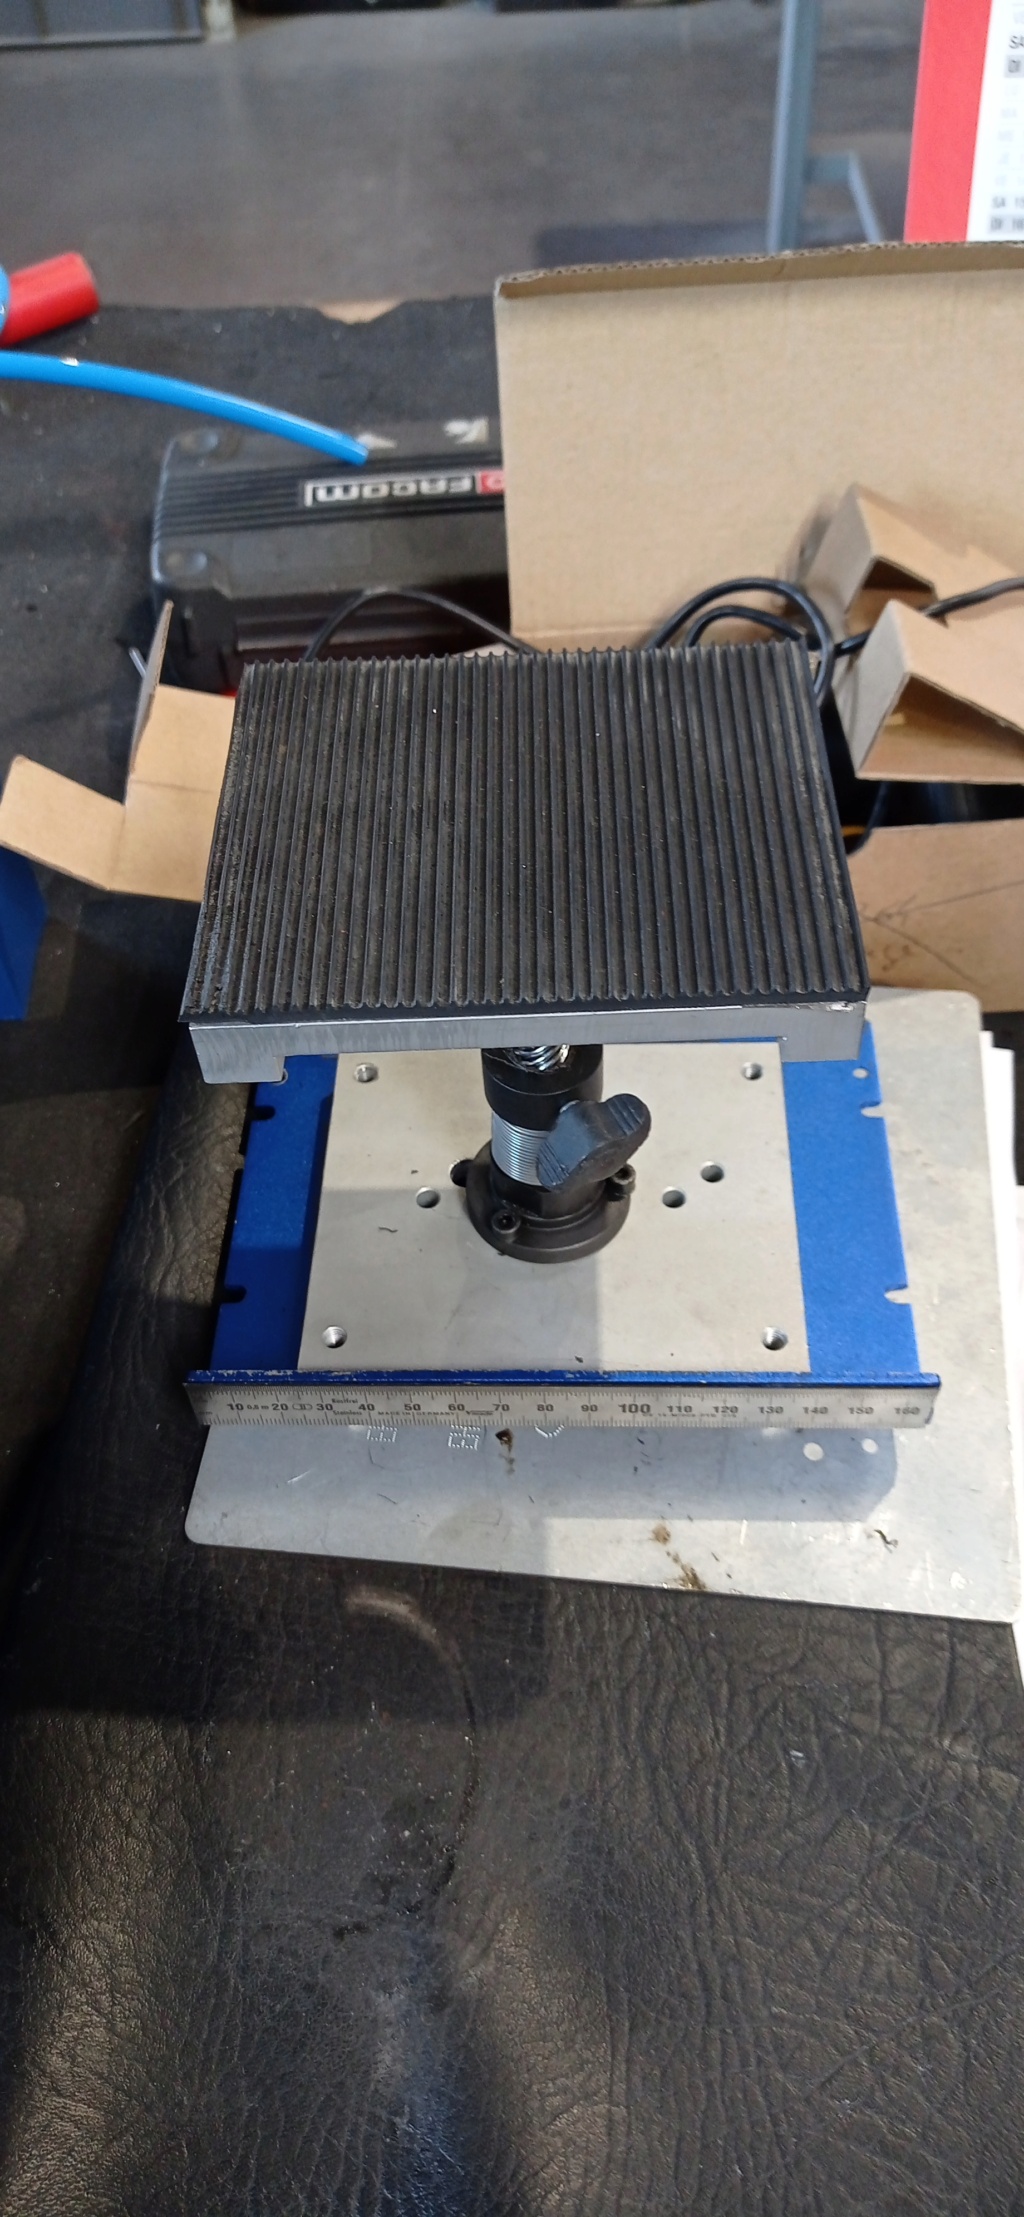 Fabrication d'un support d entretien ou réparation de scale et crawler Img_2060